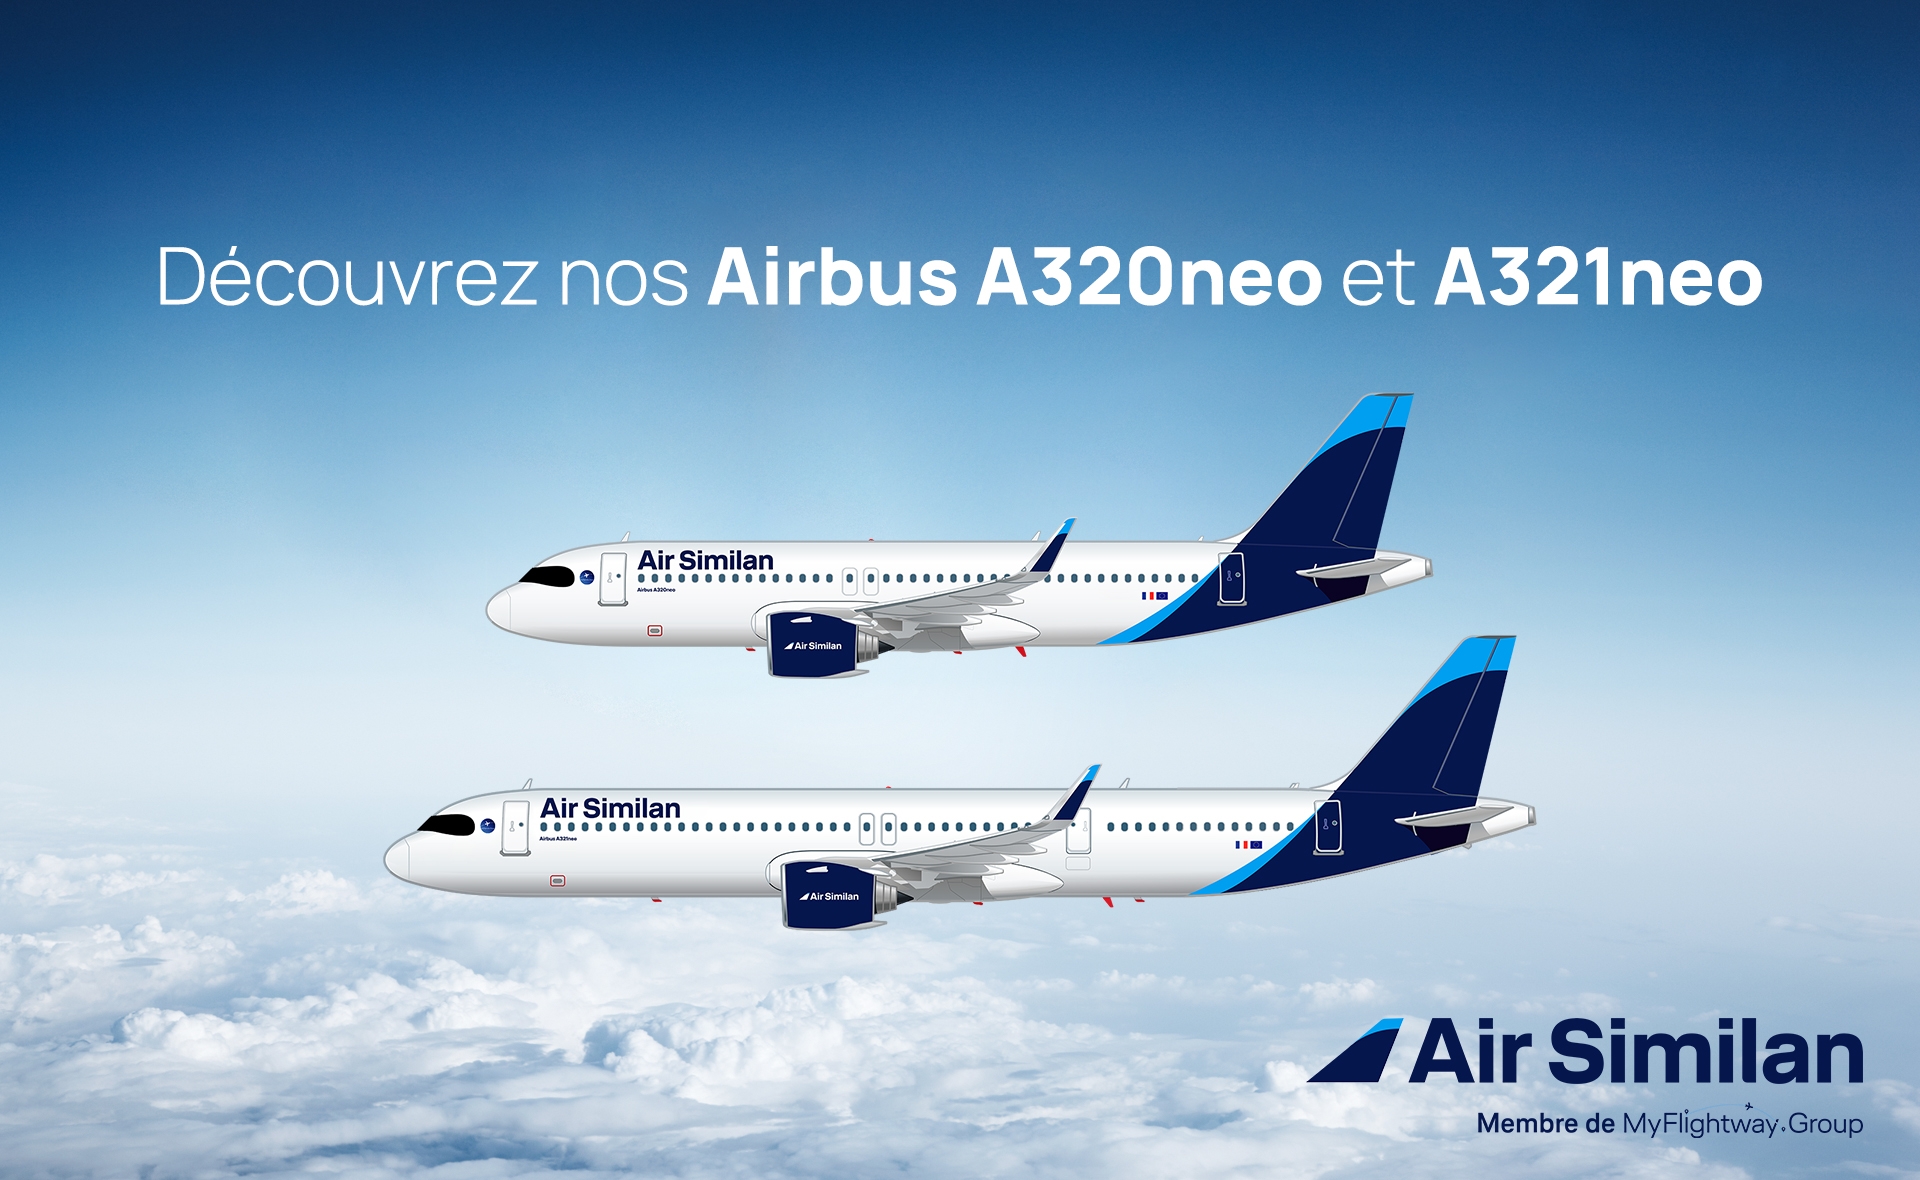 Air Similan commande 4 A320ceo et 4 737 supplémentaires, et signe une lettre d'intention pour des A320neo, A321neo, 777 et 787